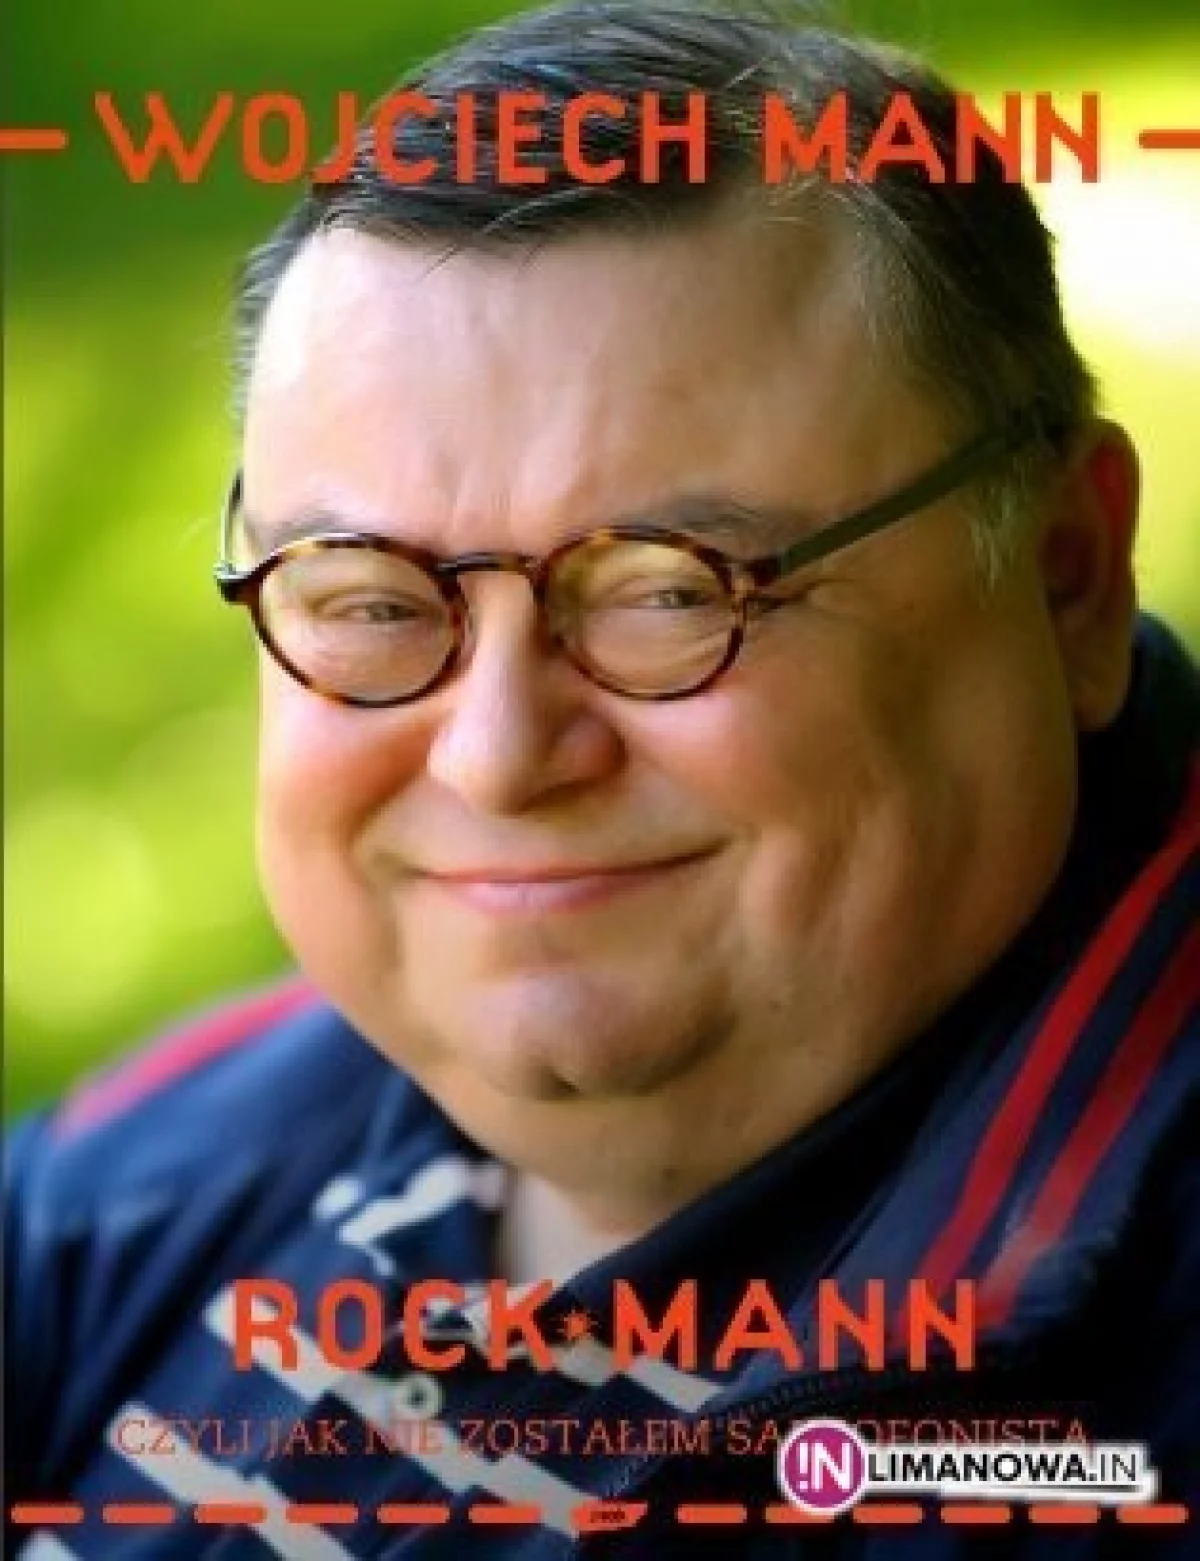 RockMann - czyli jak nie zostałem saksofonistą